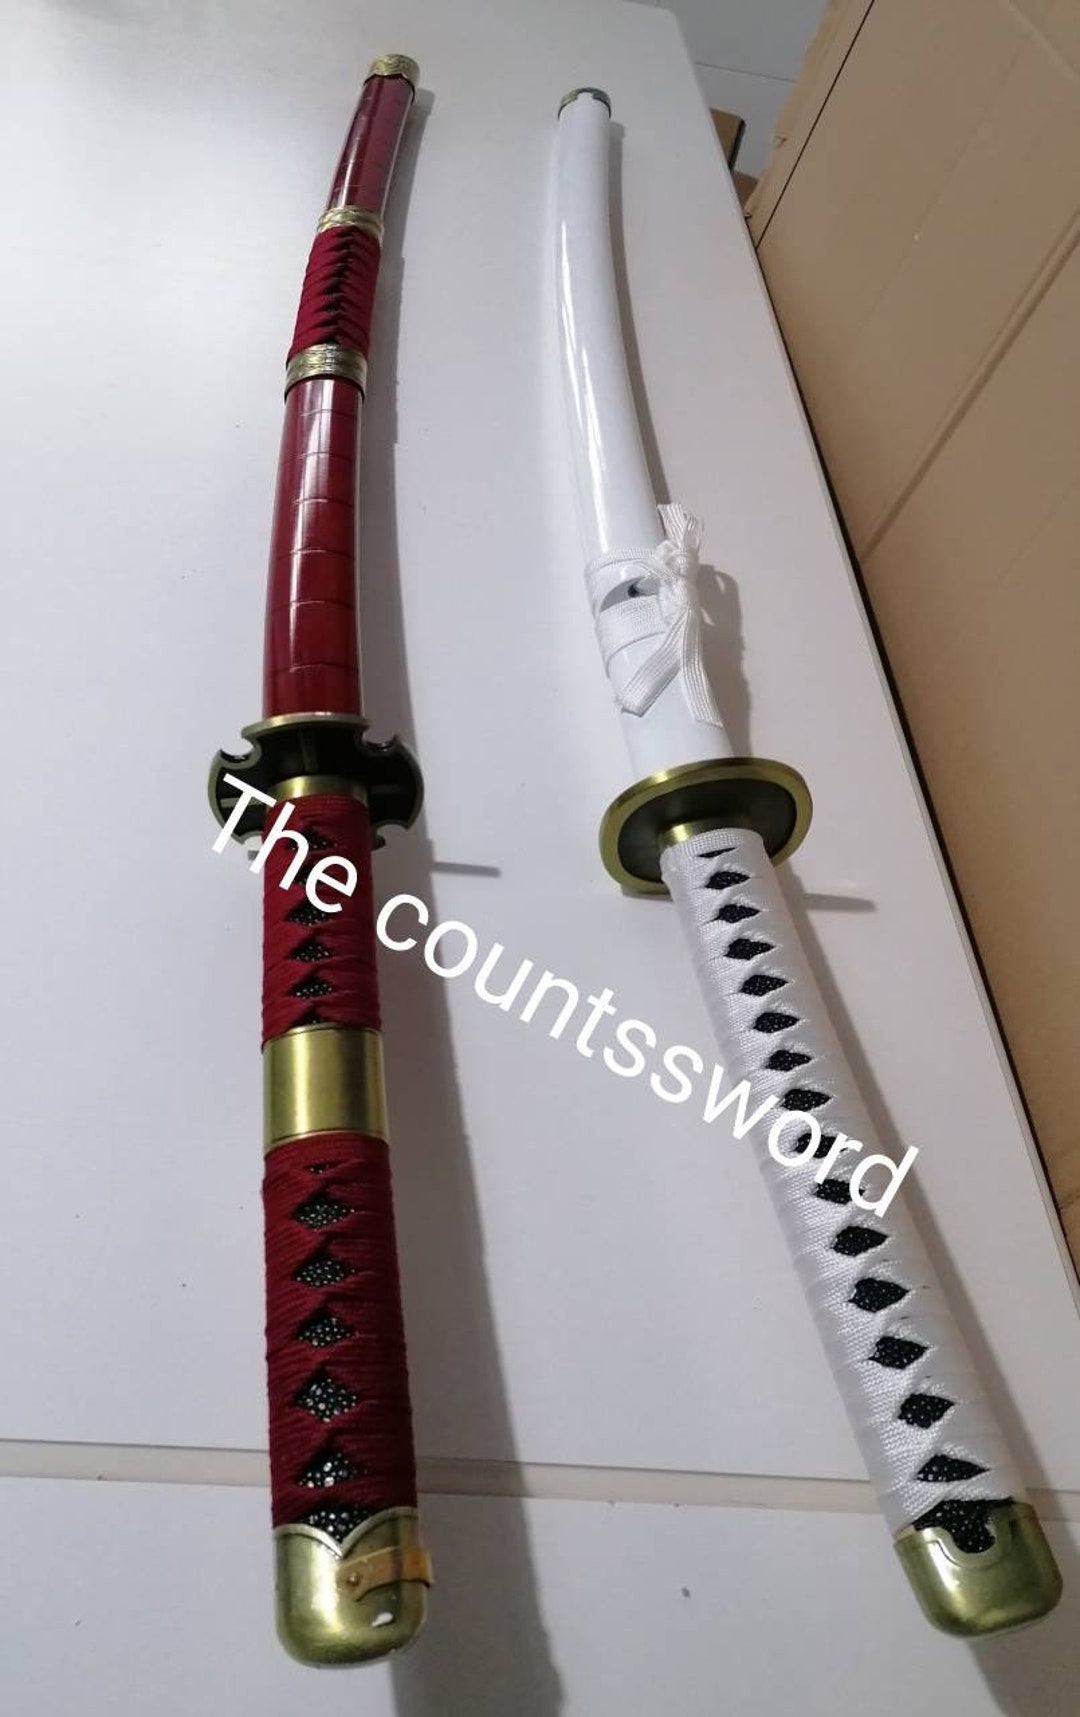 Yoru Sword of Drakule Mihawk -  Finland